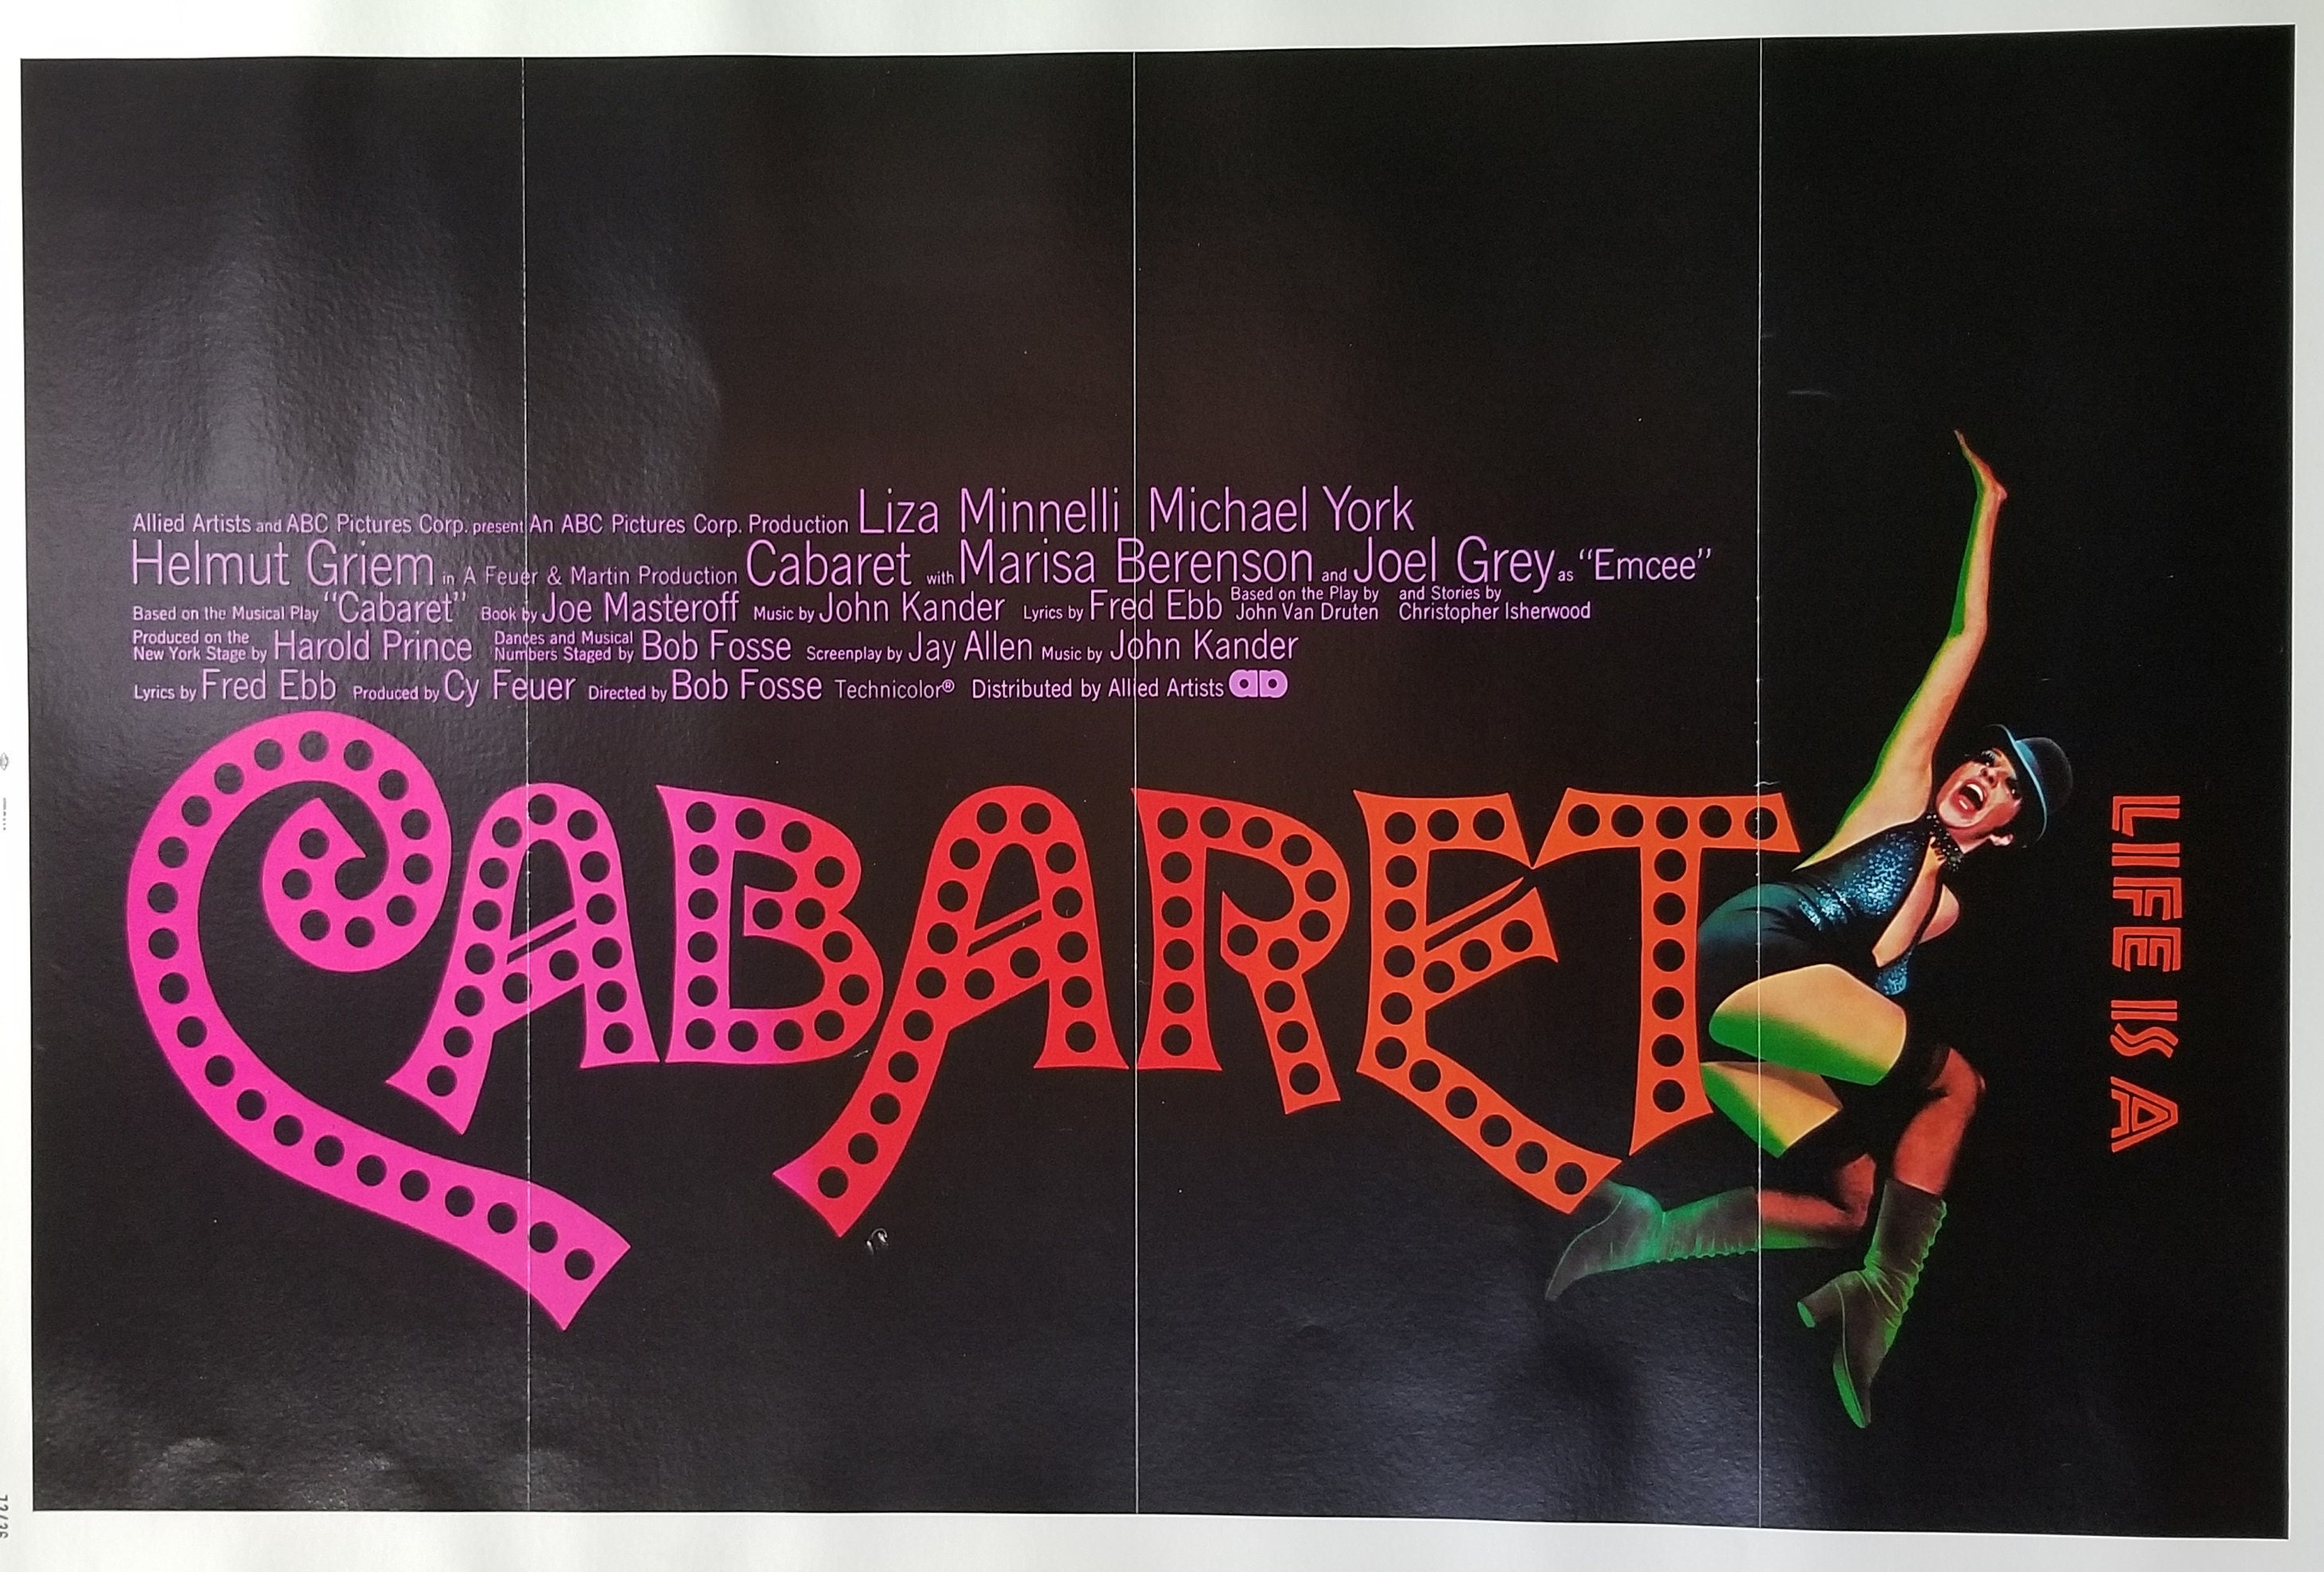 Cabaret-a Rare Original Vintage Movie Poster for pic photo